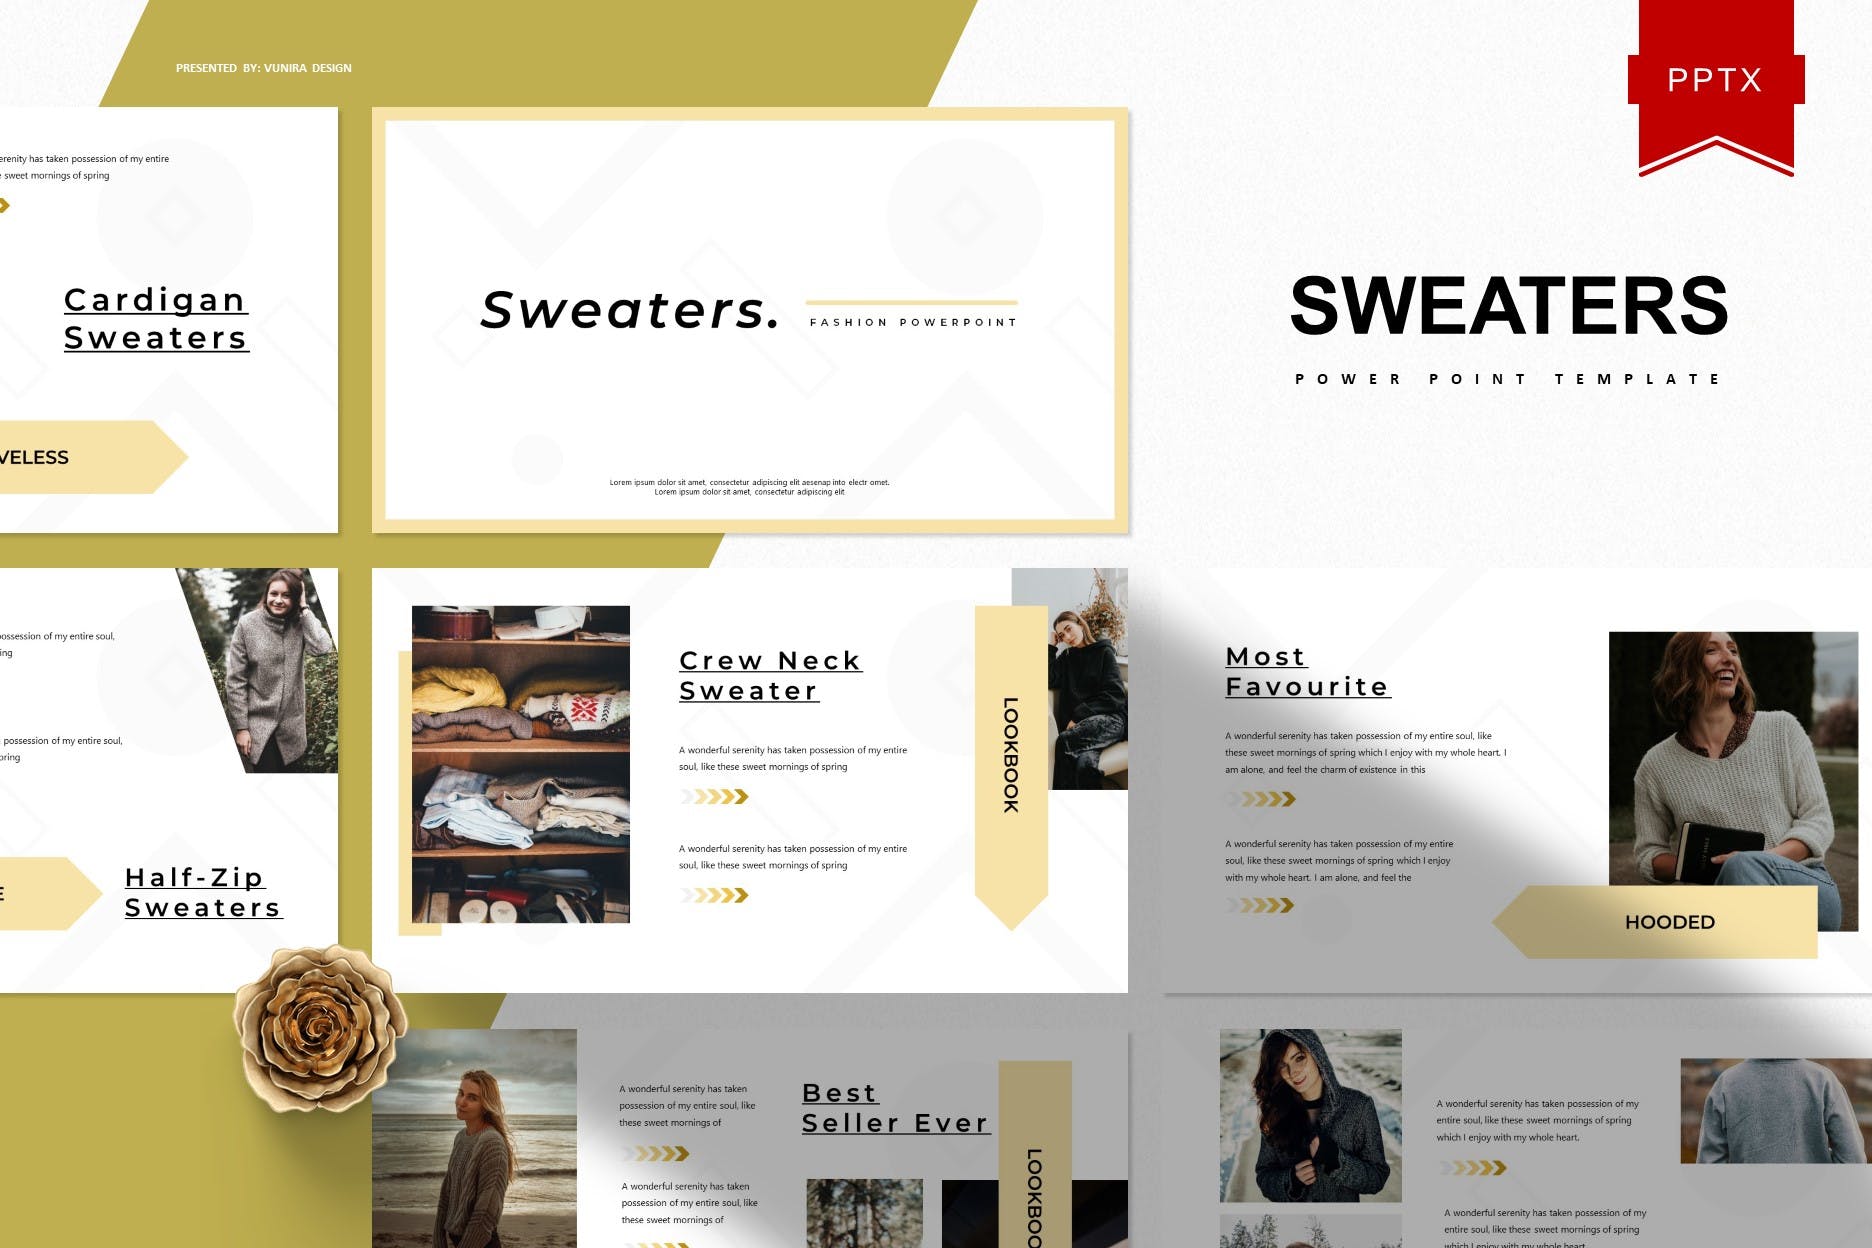 服装品牌新品上市方案PPT幻灯片模板 Sweaters | Powerpoint Template插图